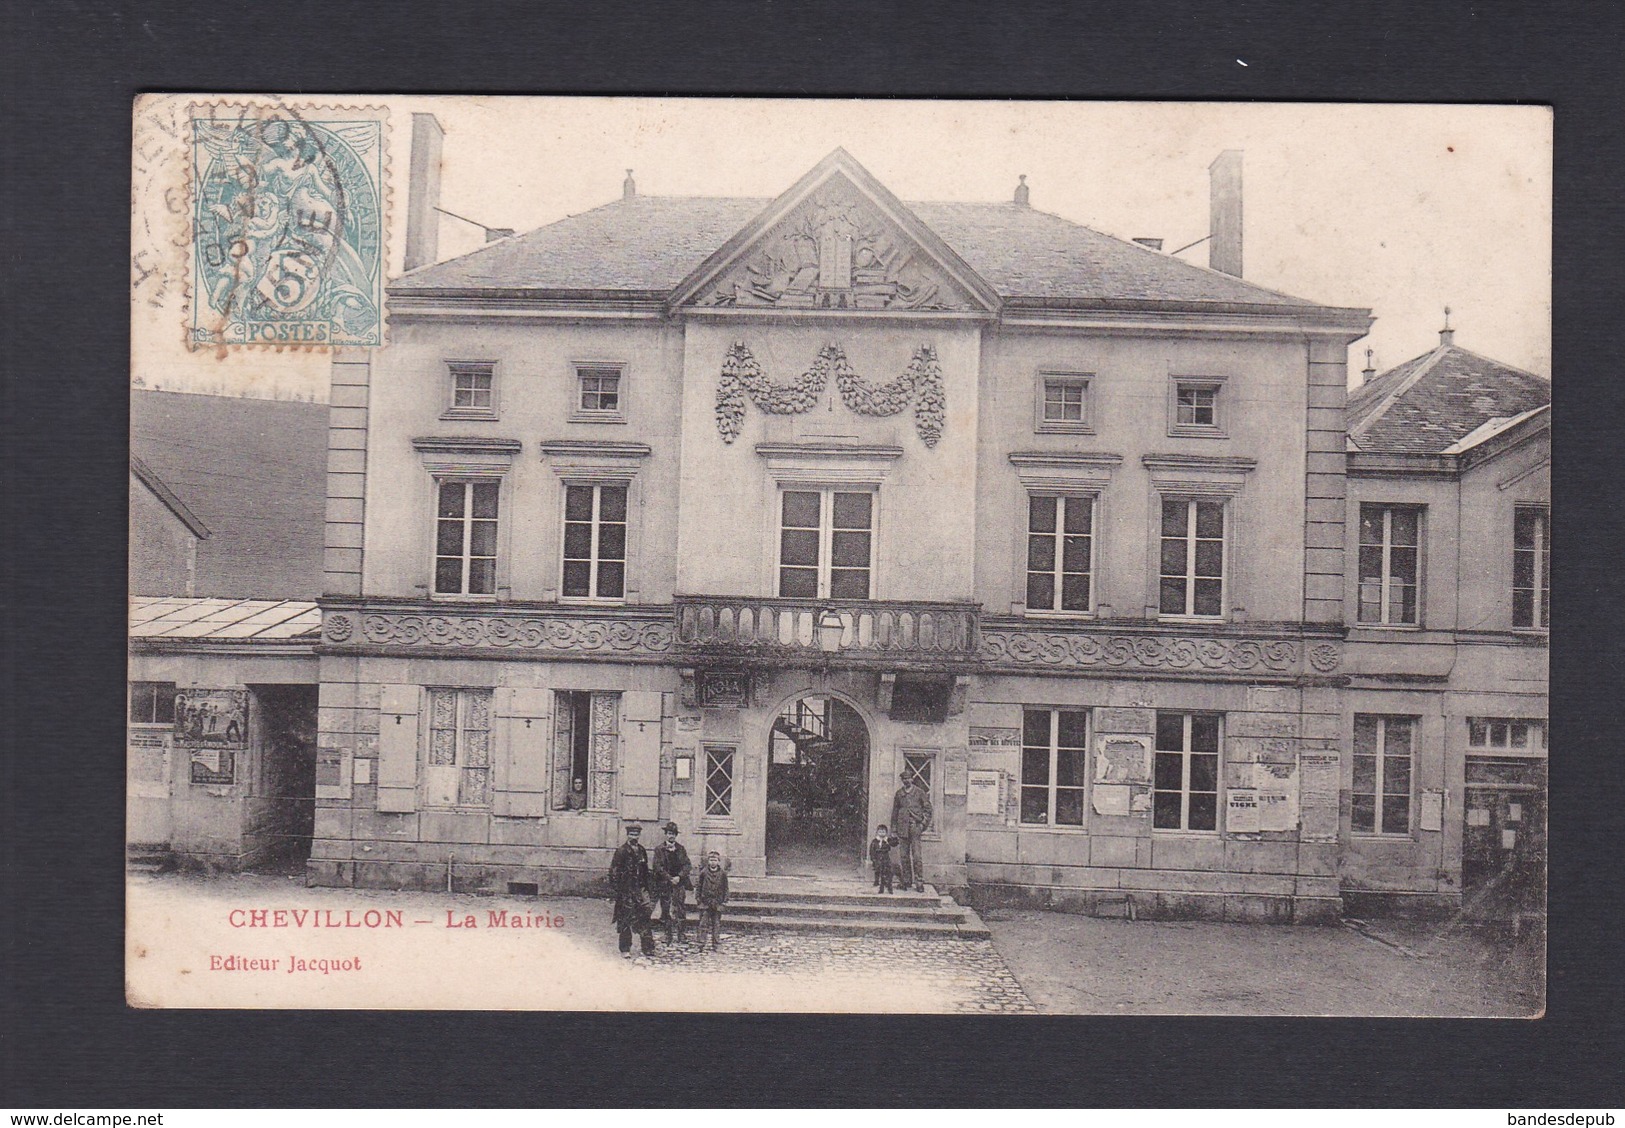 Vente Immediate Chevillon (52) La Mairie ( Animée Ed. Jacquot  Ref 40509) - Chevillon